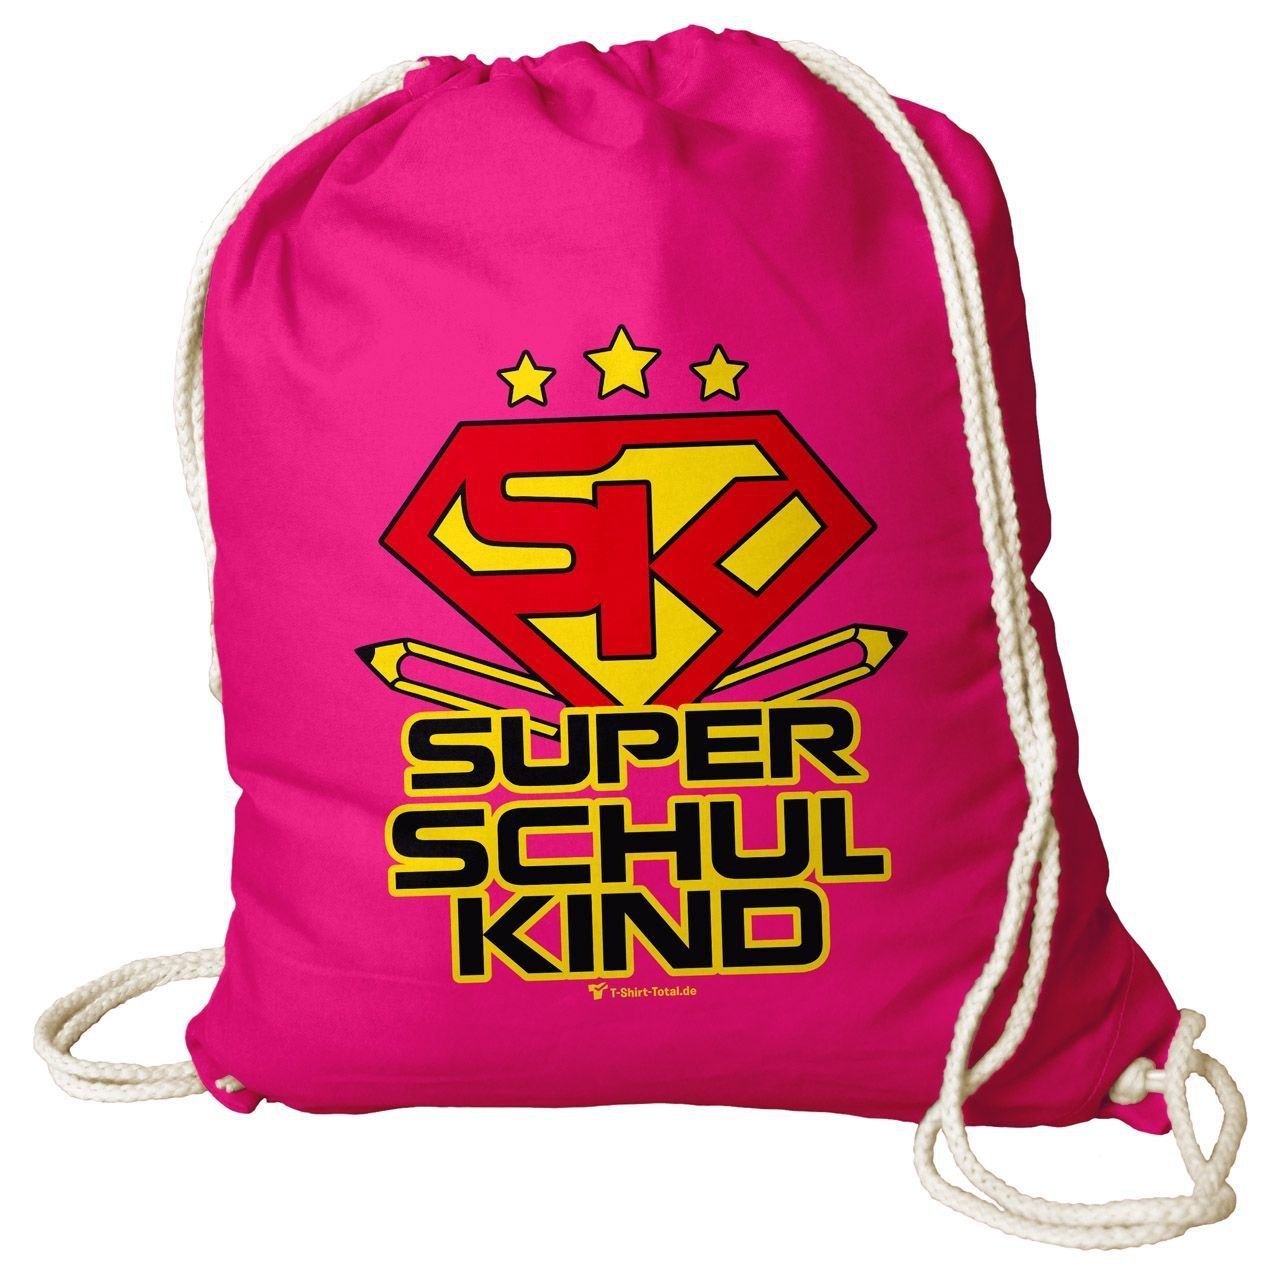 Super Schulkind Rucksack Beutel pink